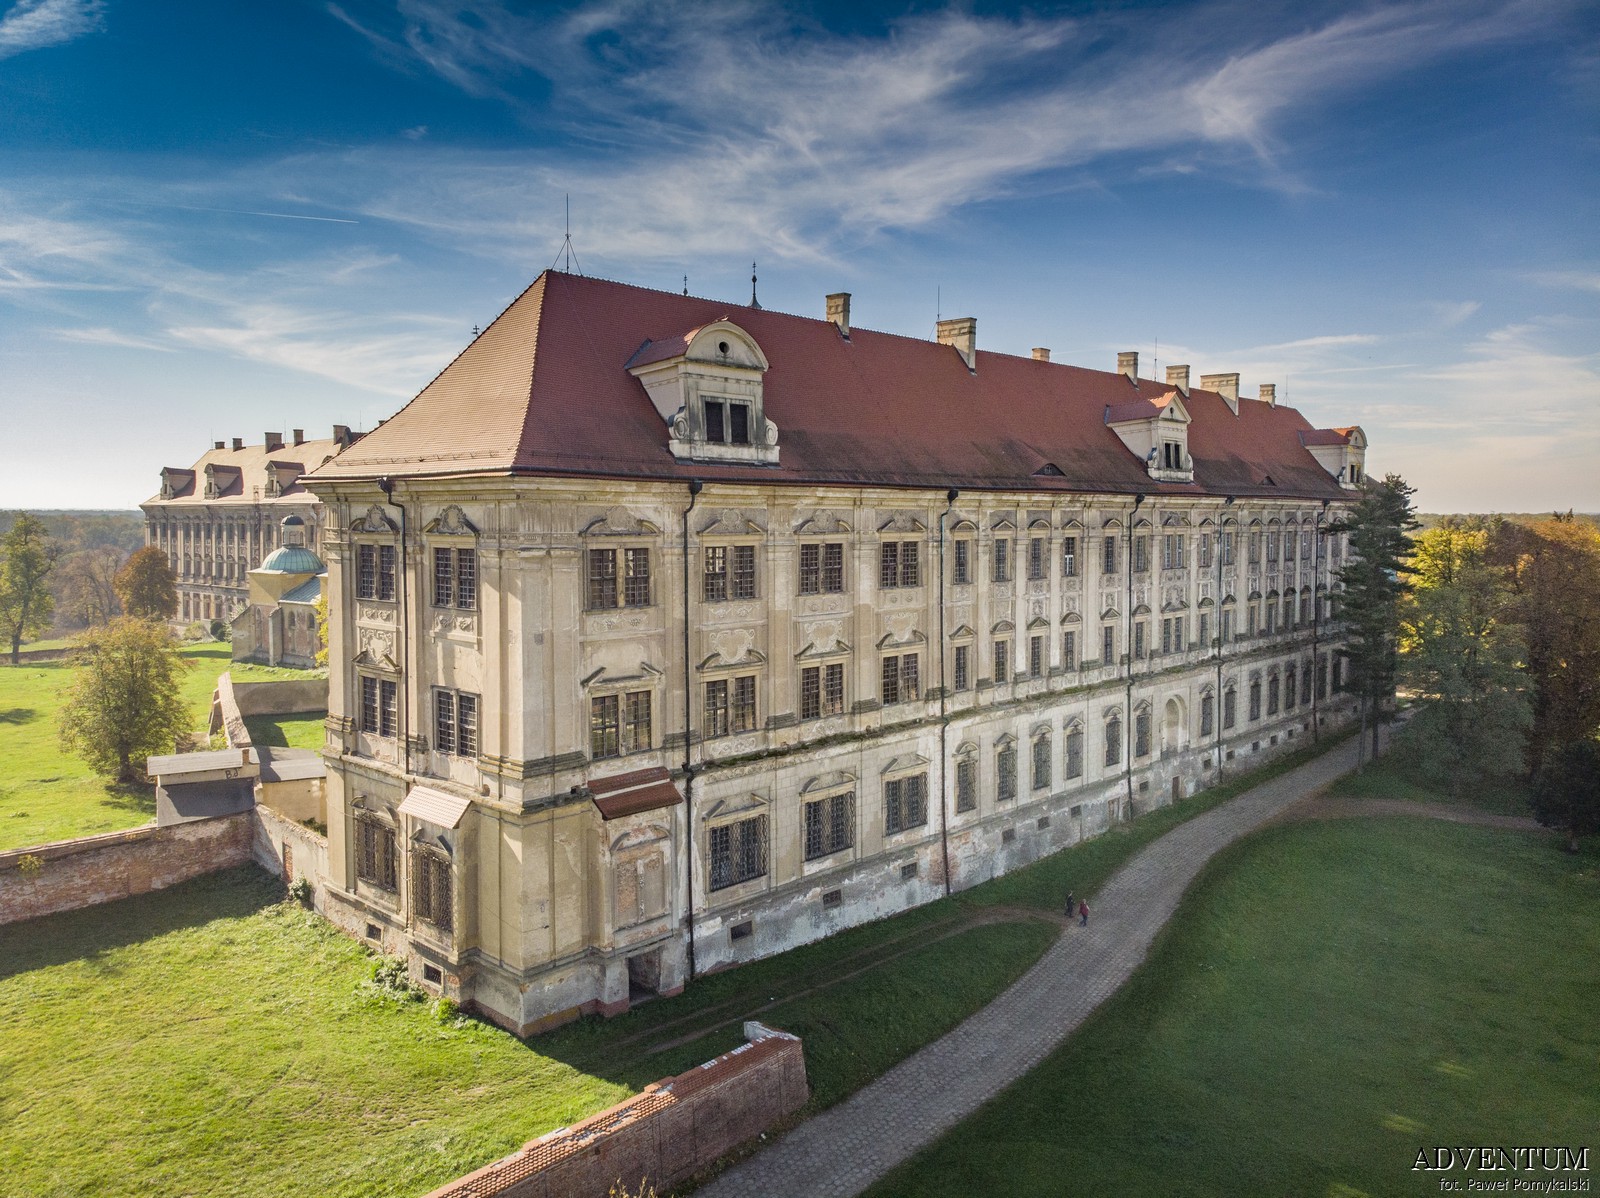 Lubiąż Klasztor Zwiedzanie Kościół Imprezy Atrakcje Dolny śląsk Solnośląskie pomysł wycieczka